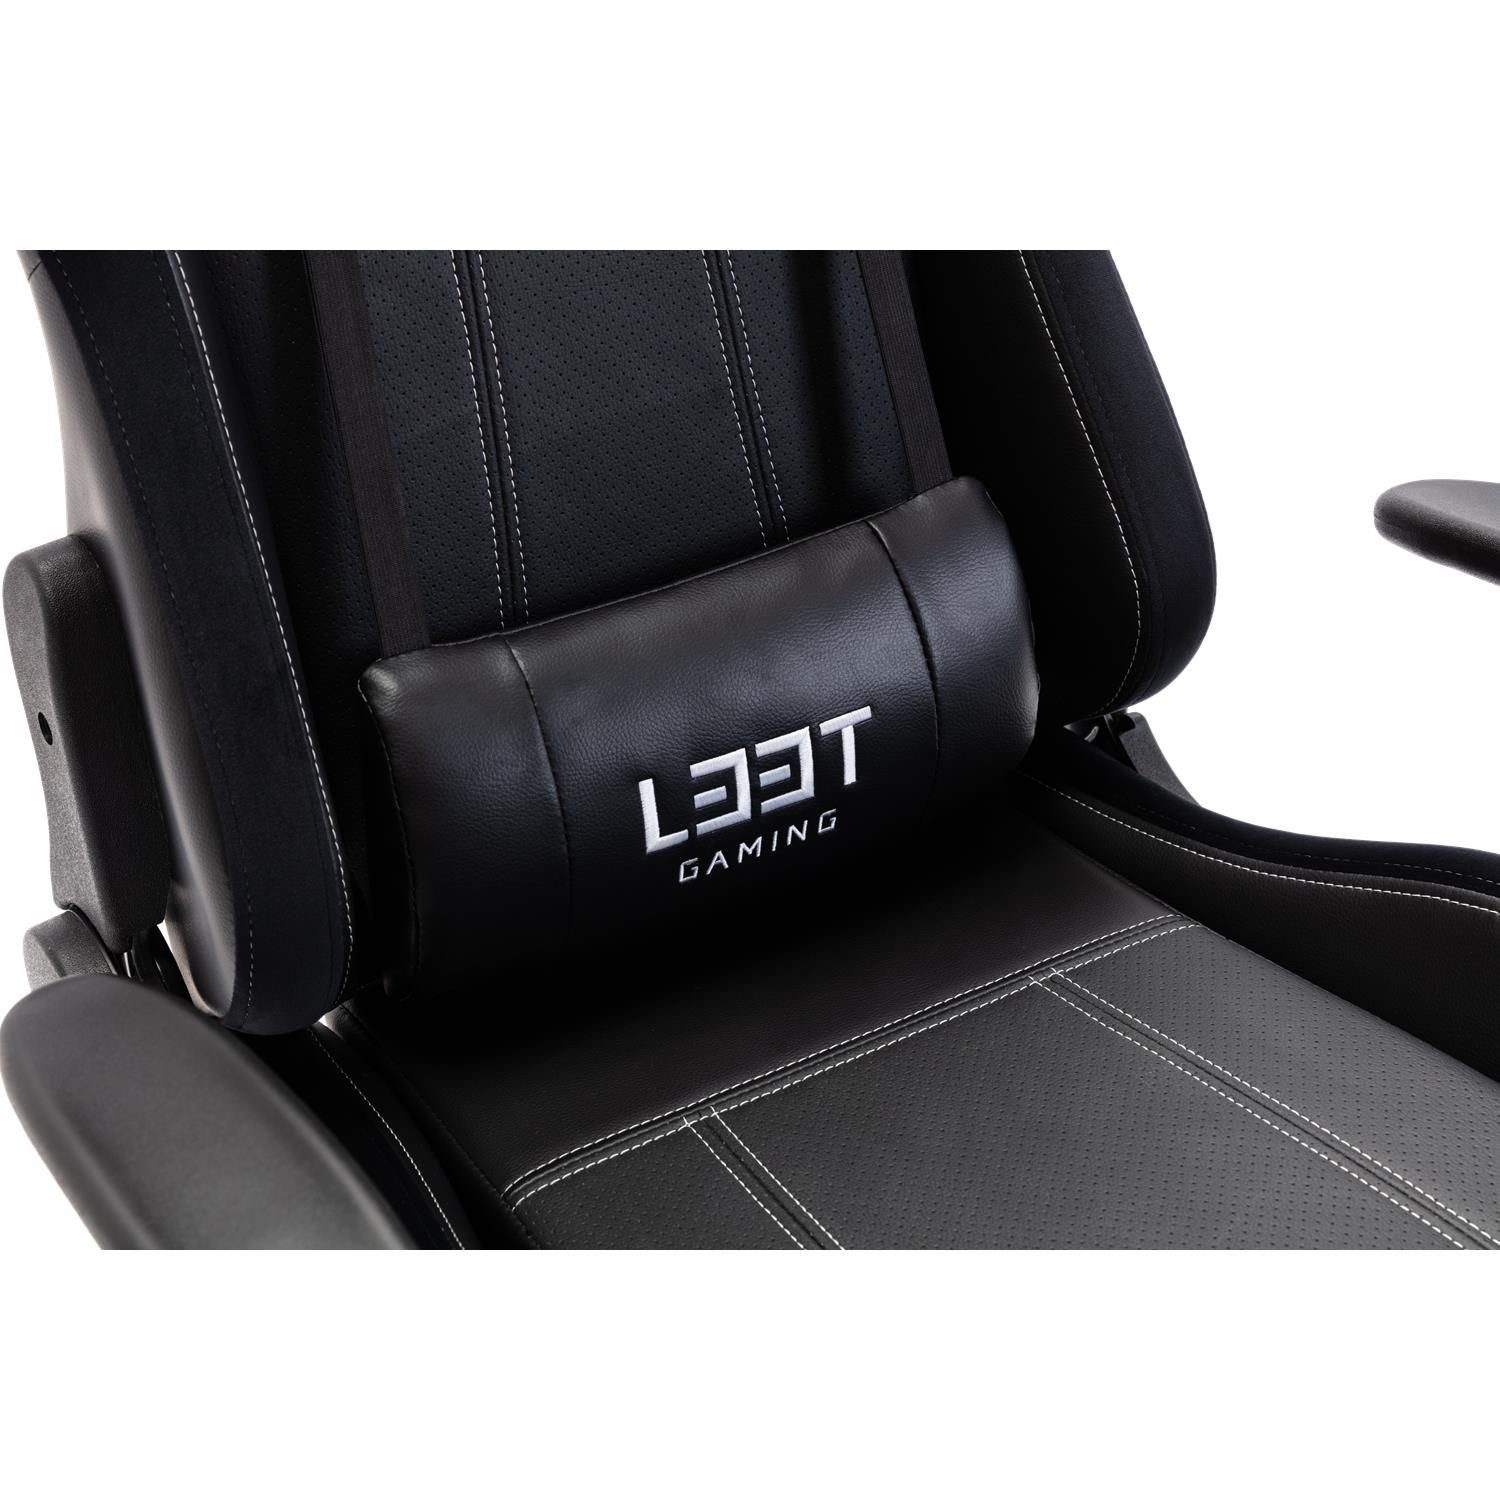 Büro-Stuhl kg neigbar, Stuhl Gaming (kein Evolve L33T mit belastbar Set), 120 höhenverstellbar, bis Armlehne / Gaming-Stuhl